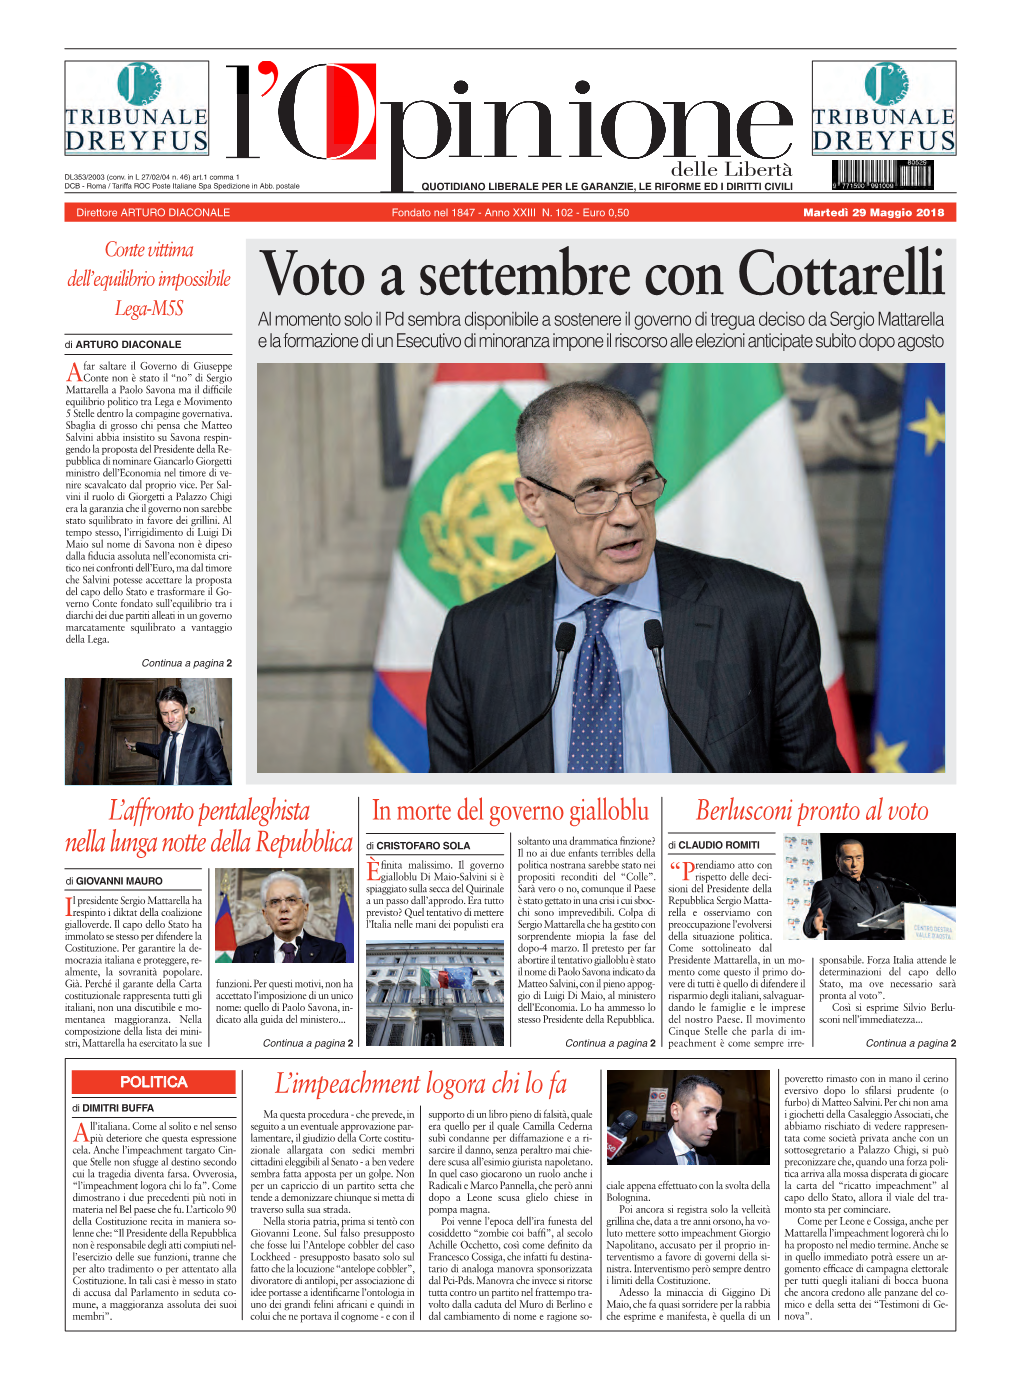 Voto a Settembre Con Cottarelli